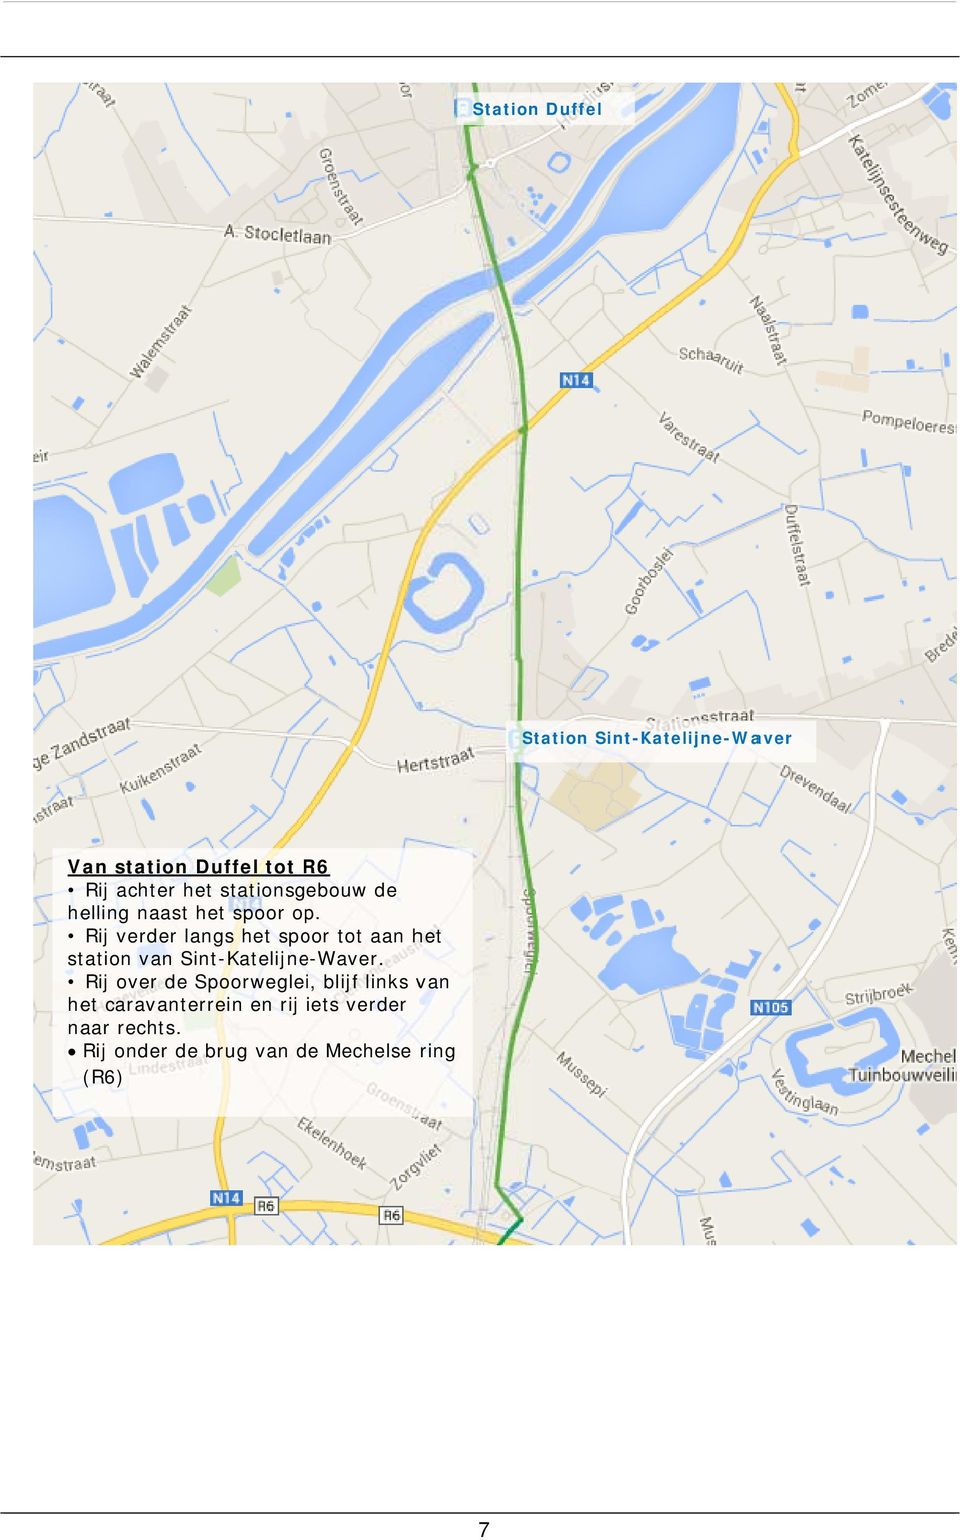 Rij verder langs het spoor tot aan het station van Sint-Katelijne-Waver.